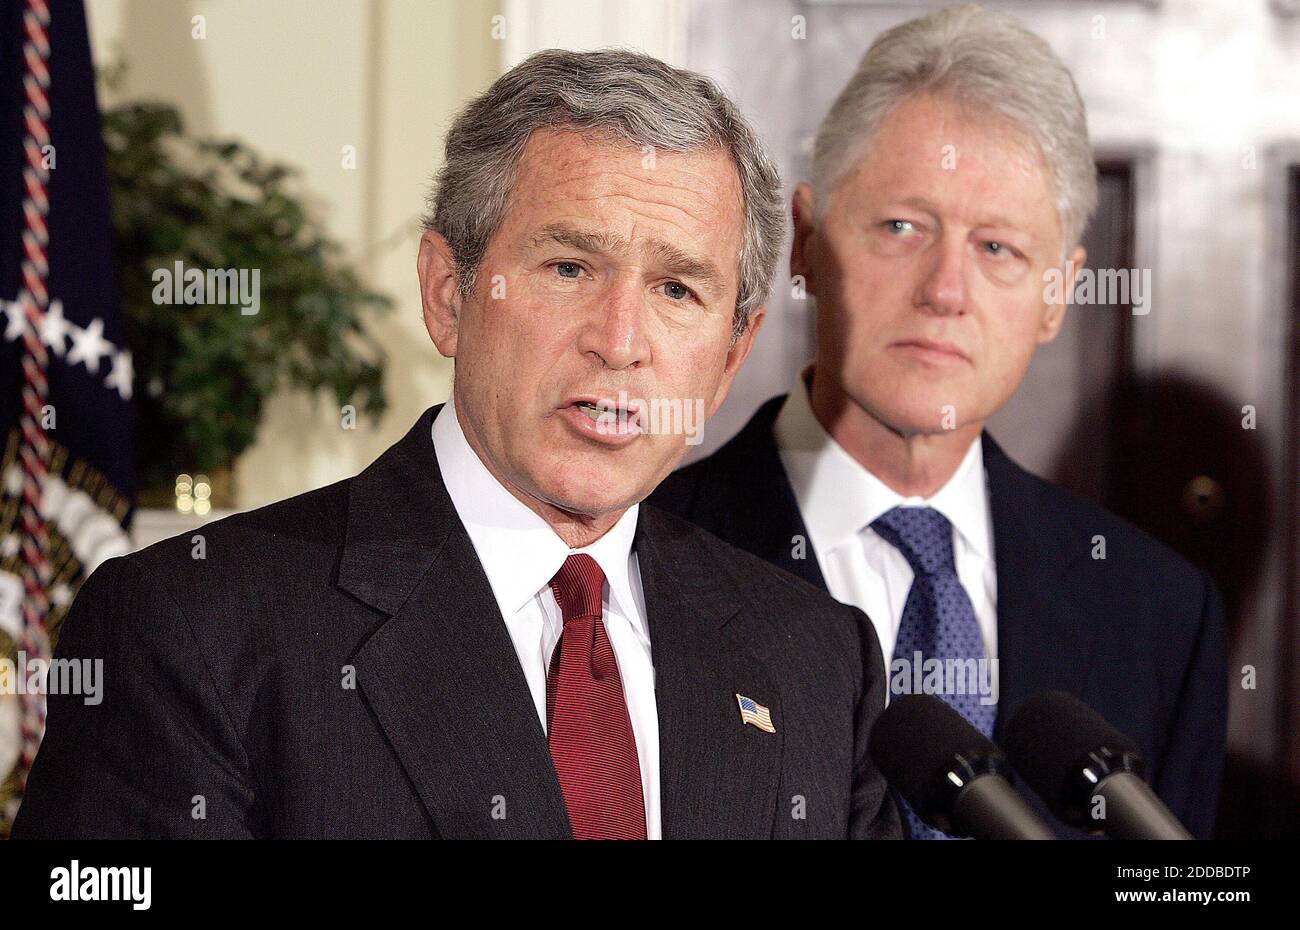 PAS DE FILM, PAS DE VIDÉO, PAS de télévision, PAS DE DOCUMENTAIRE - le président américain George W. Bush , flanqué des anciens présidents Bill Clinton (R) et George H. Bush (L), fait un appel aux Américains pour des dons en faveur des victimes du tsunami de la semaine dernière, alors qu'à la Maison Blanche le 3 janvier 2005. Bush a réuni lundi les anciens présidents George Bush et Clinton pour lancer un appel aux Américains pour qu'ils puissent faire un don aux victimes du tremblement de terre et des tsunamis en Asie du Sud. Le père du président et Clinton mèneront un effort bipartisan de rechercher des dons, petits et grands, pour fournir une aide de secours à des millions de personnes Banque D'Images